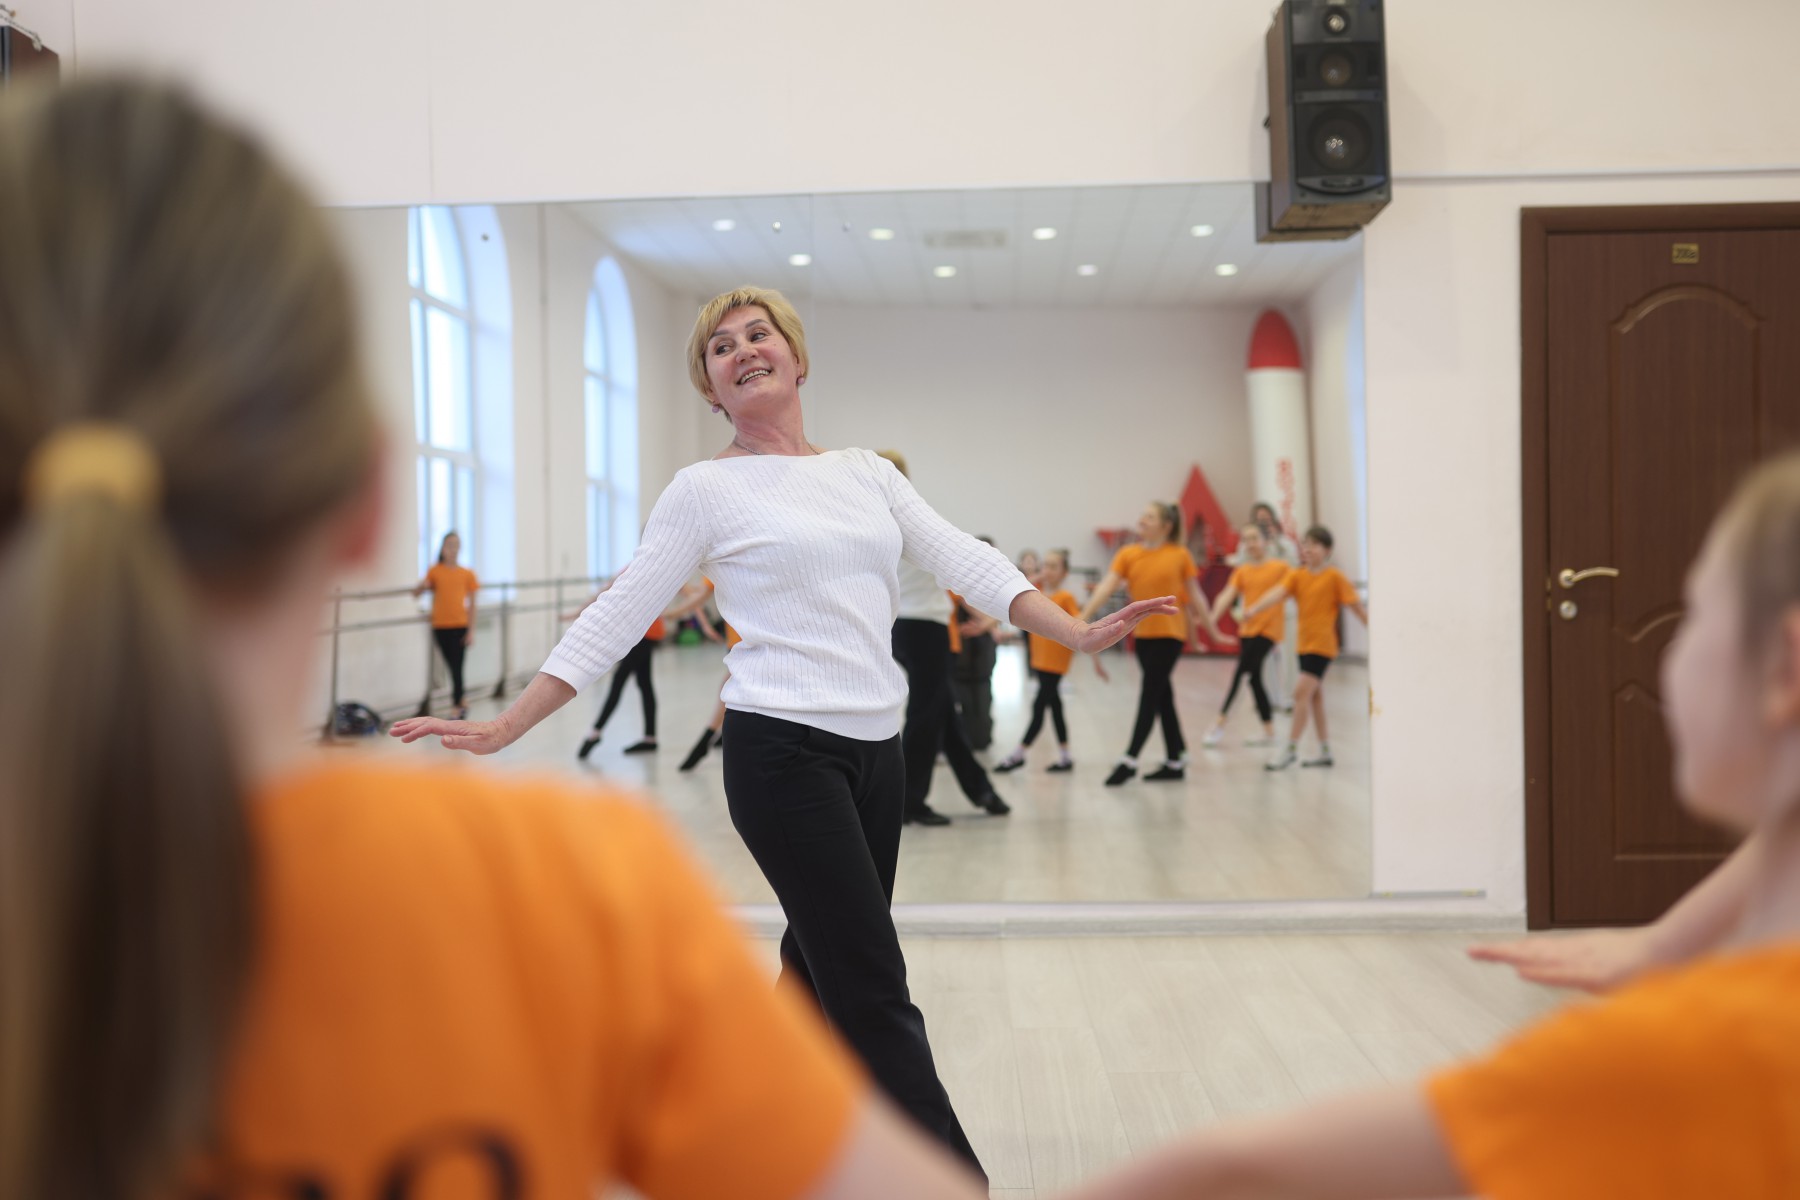 Светлана Трофимова не замечает возраста, юных танцоров она учит своим примером, выполняя все танцевальные партии вместе с ними. Фото Владимира Коцюбы-Белых